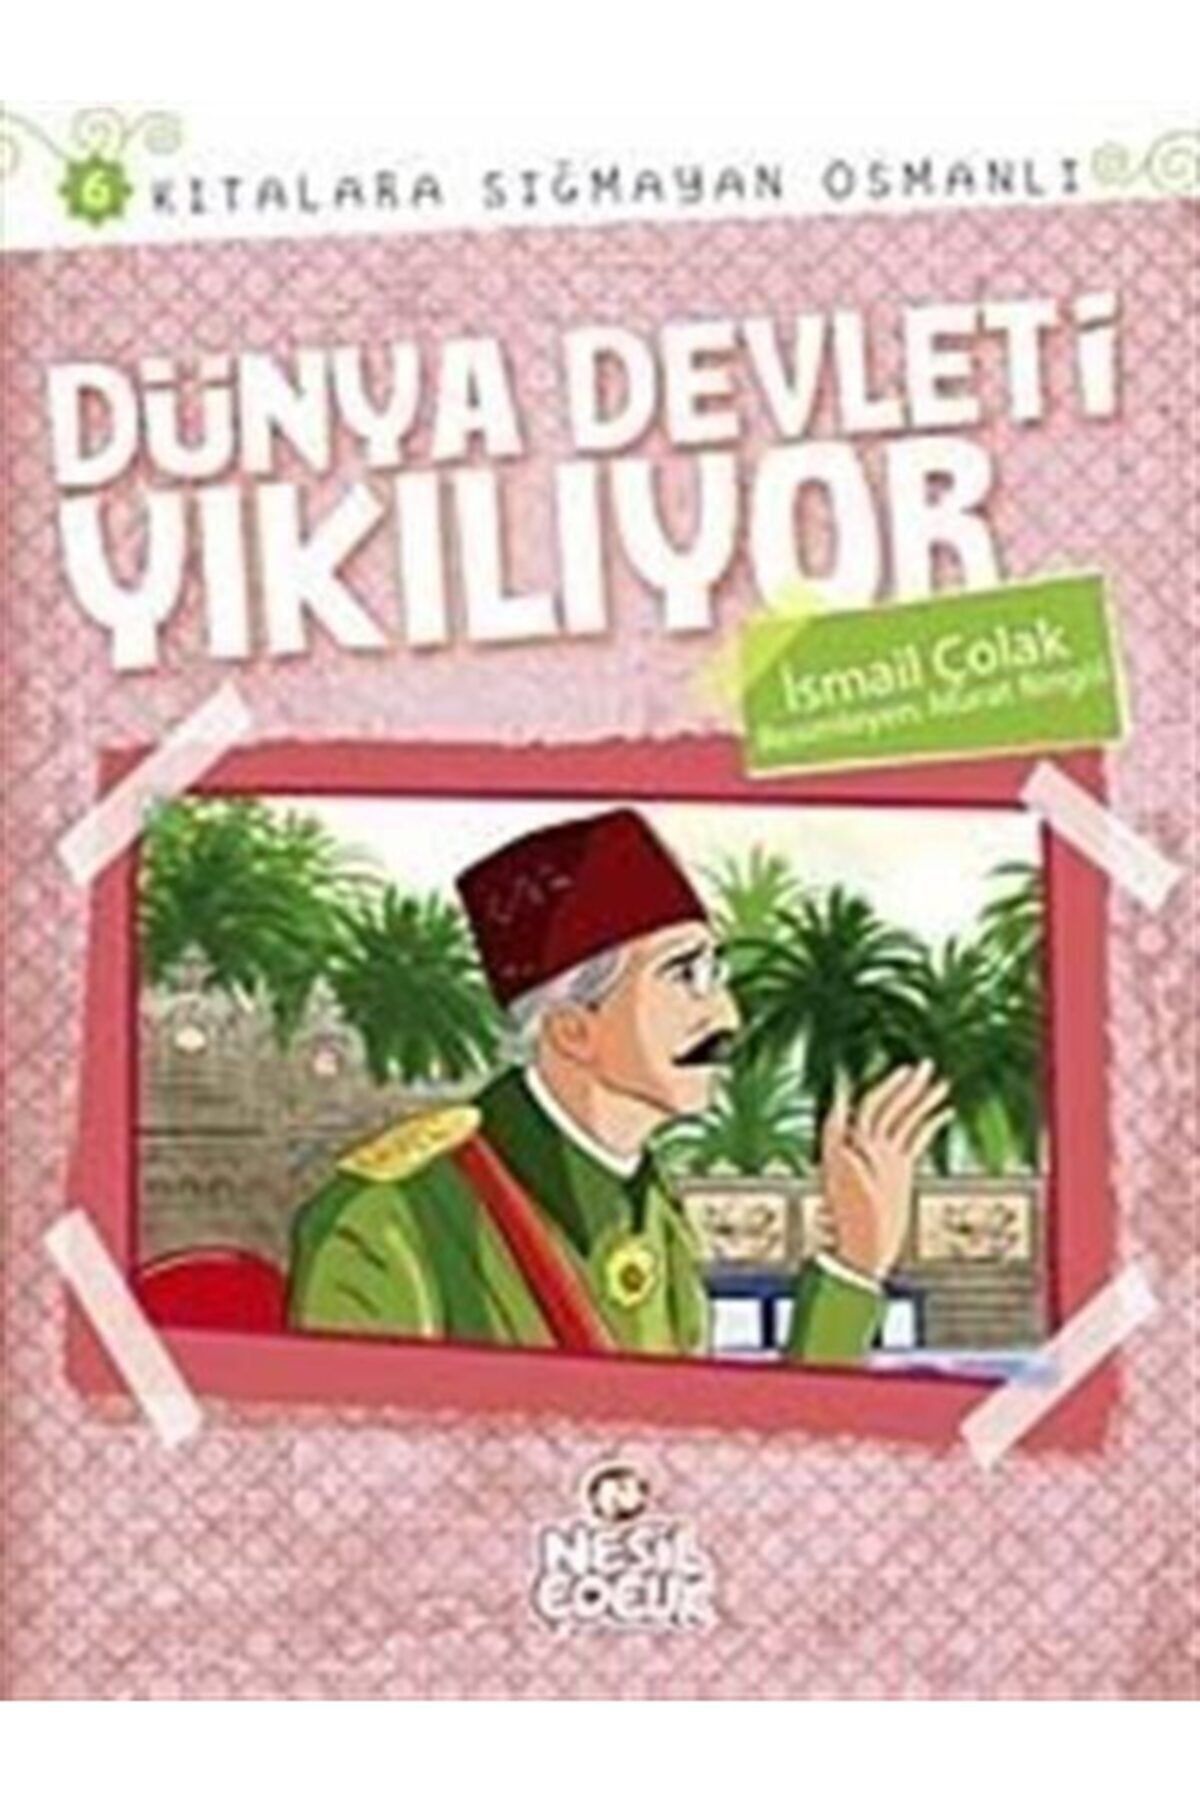 Nesil Çocuk Yayınları Dünya Devleti Yıkılıyor  Kıtalara Sığmayan Osmanlı6